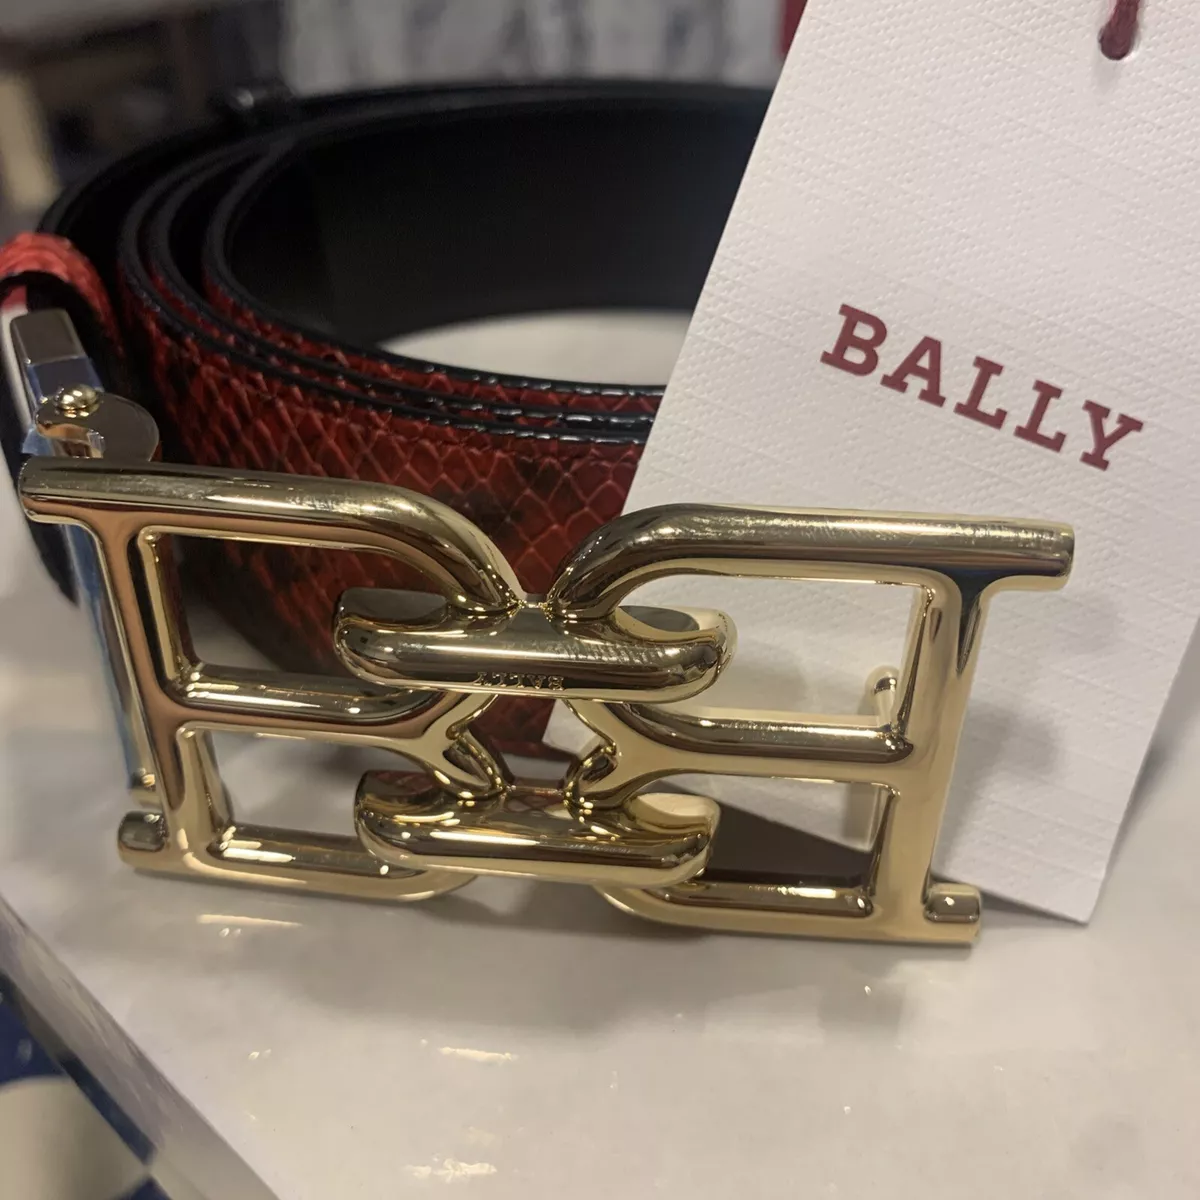 Bally Men's B-Chain Snake-Effect Leather Belt